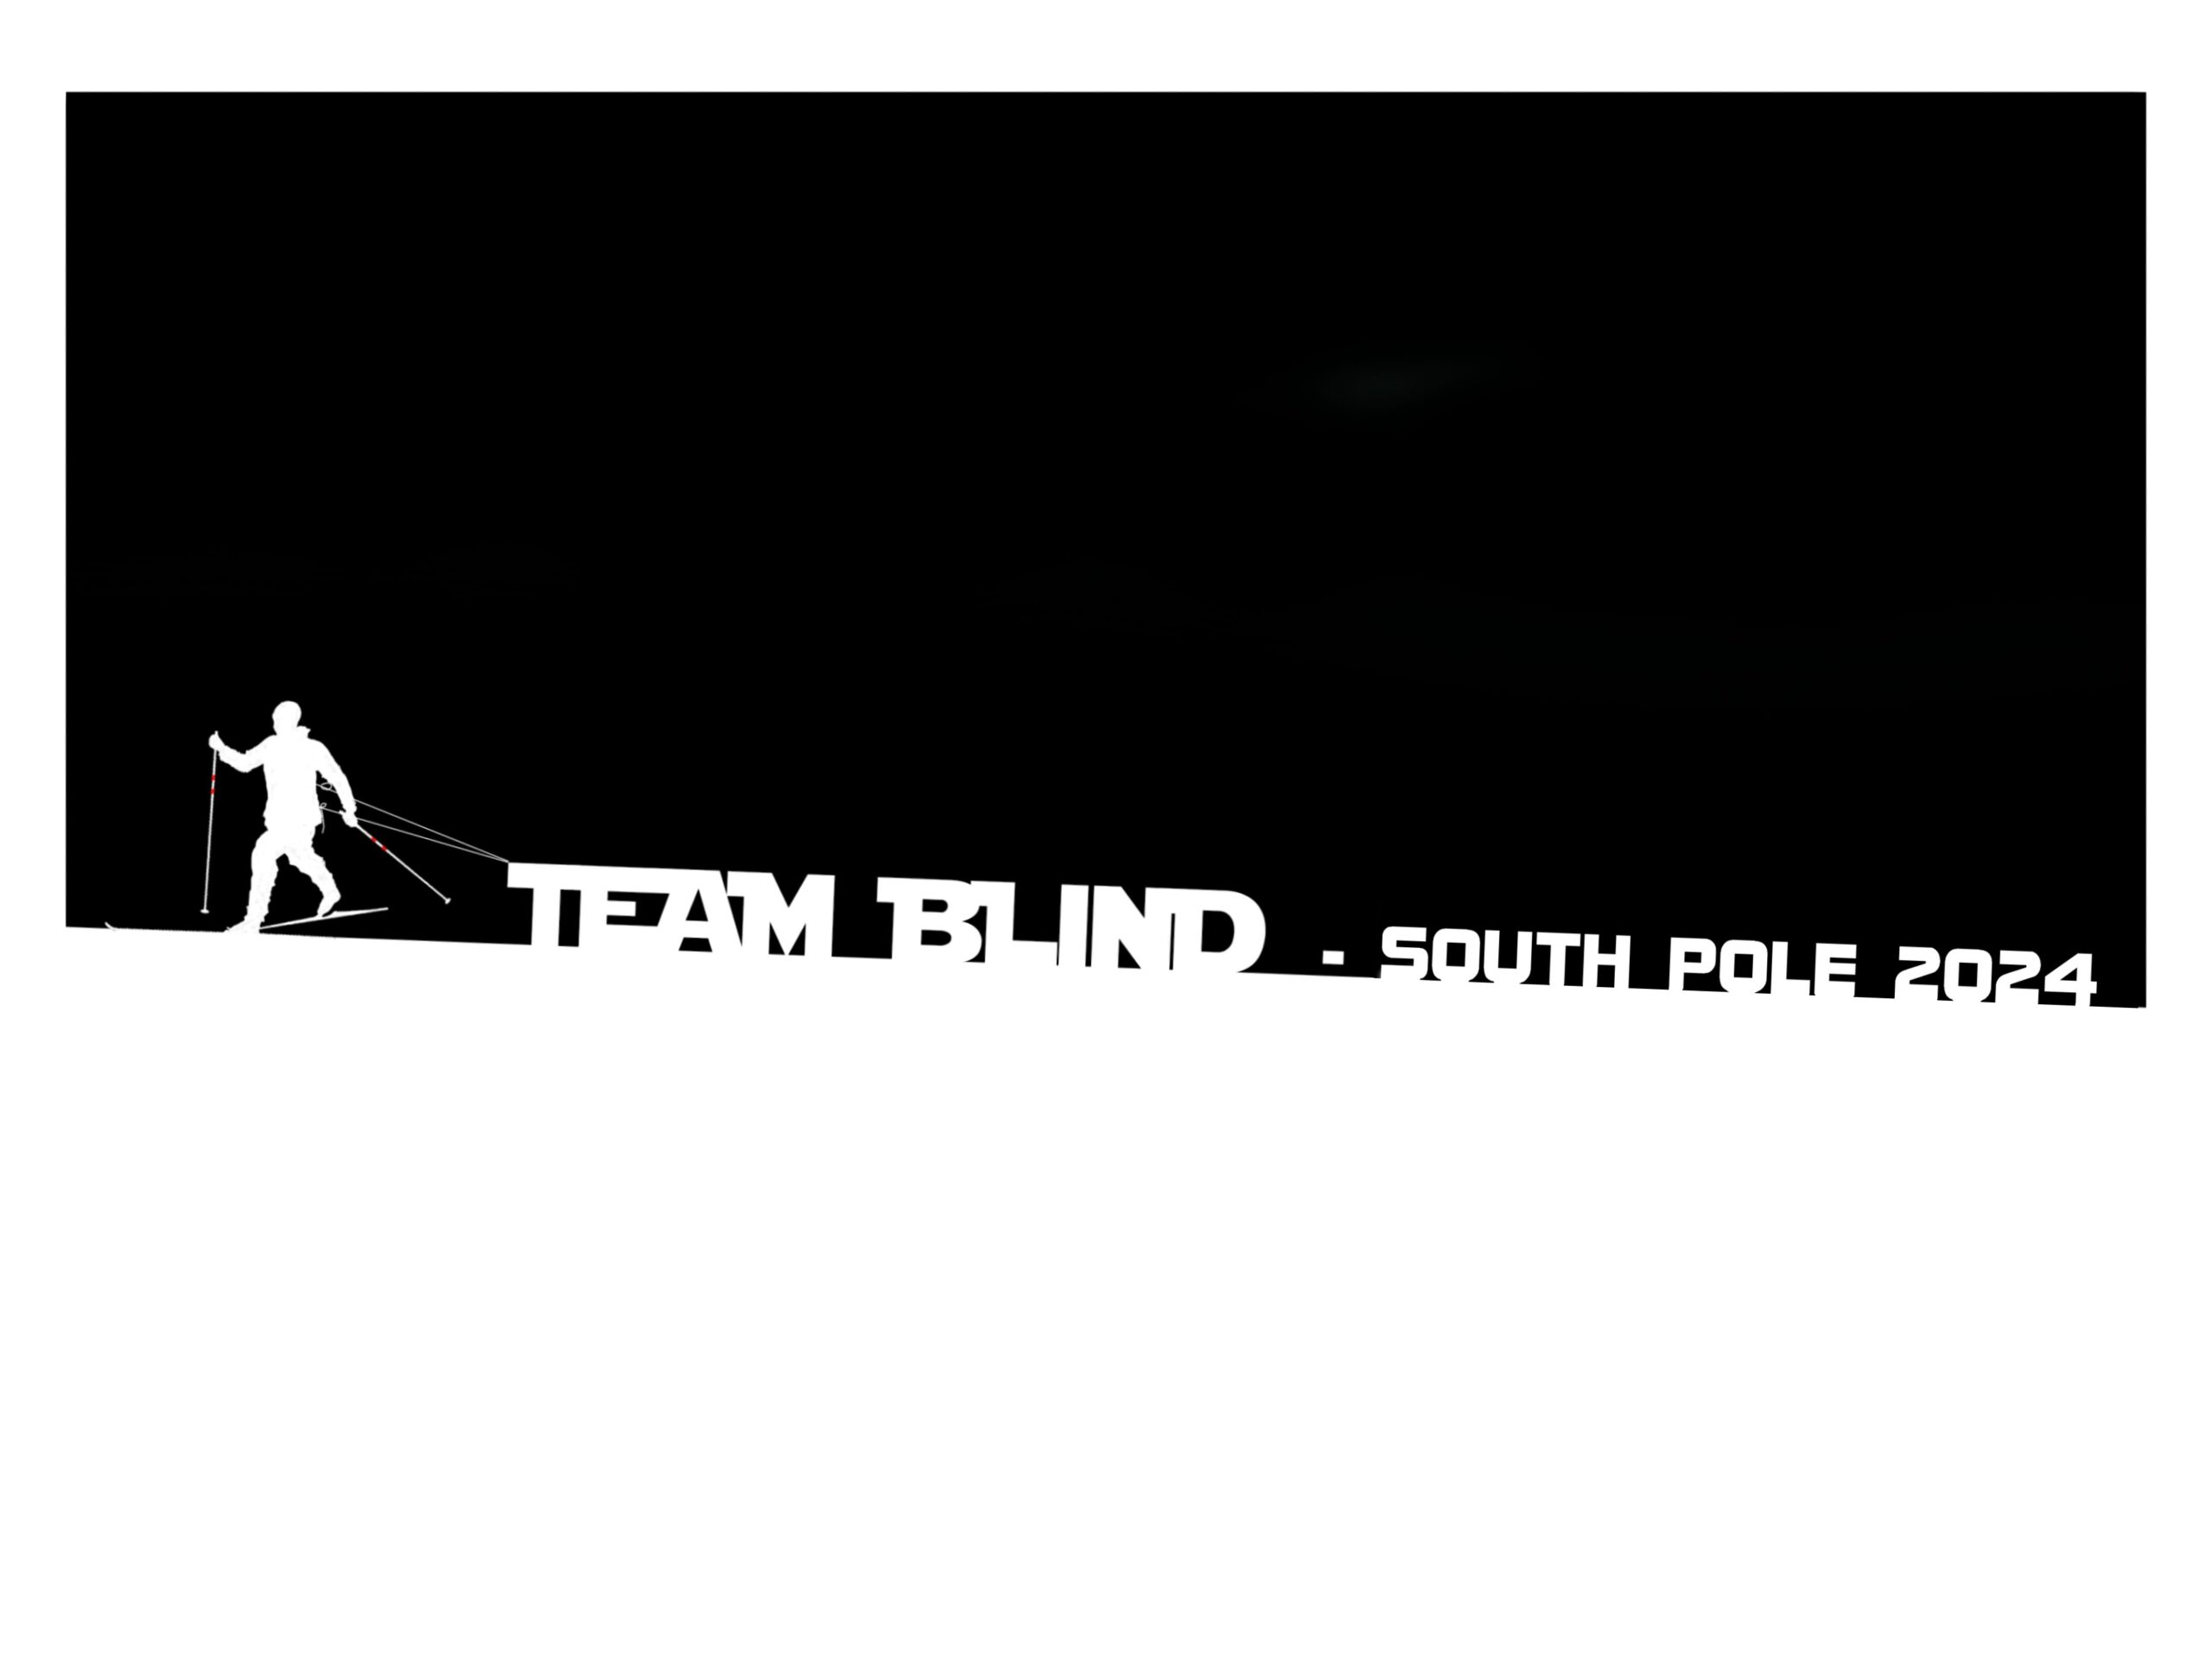 Billede af en skiløber der trækker teksten "Team Blind - south Pole 2024" op ad en bakke